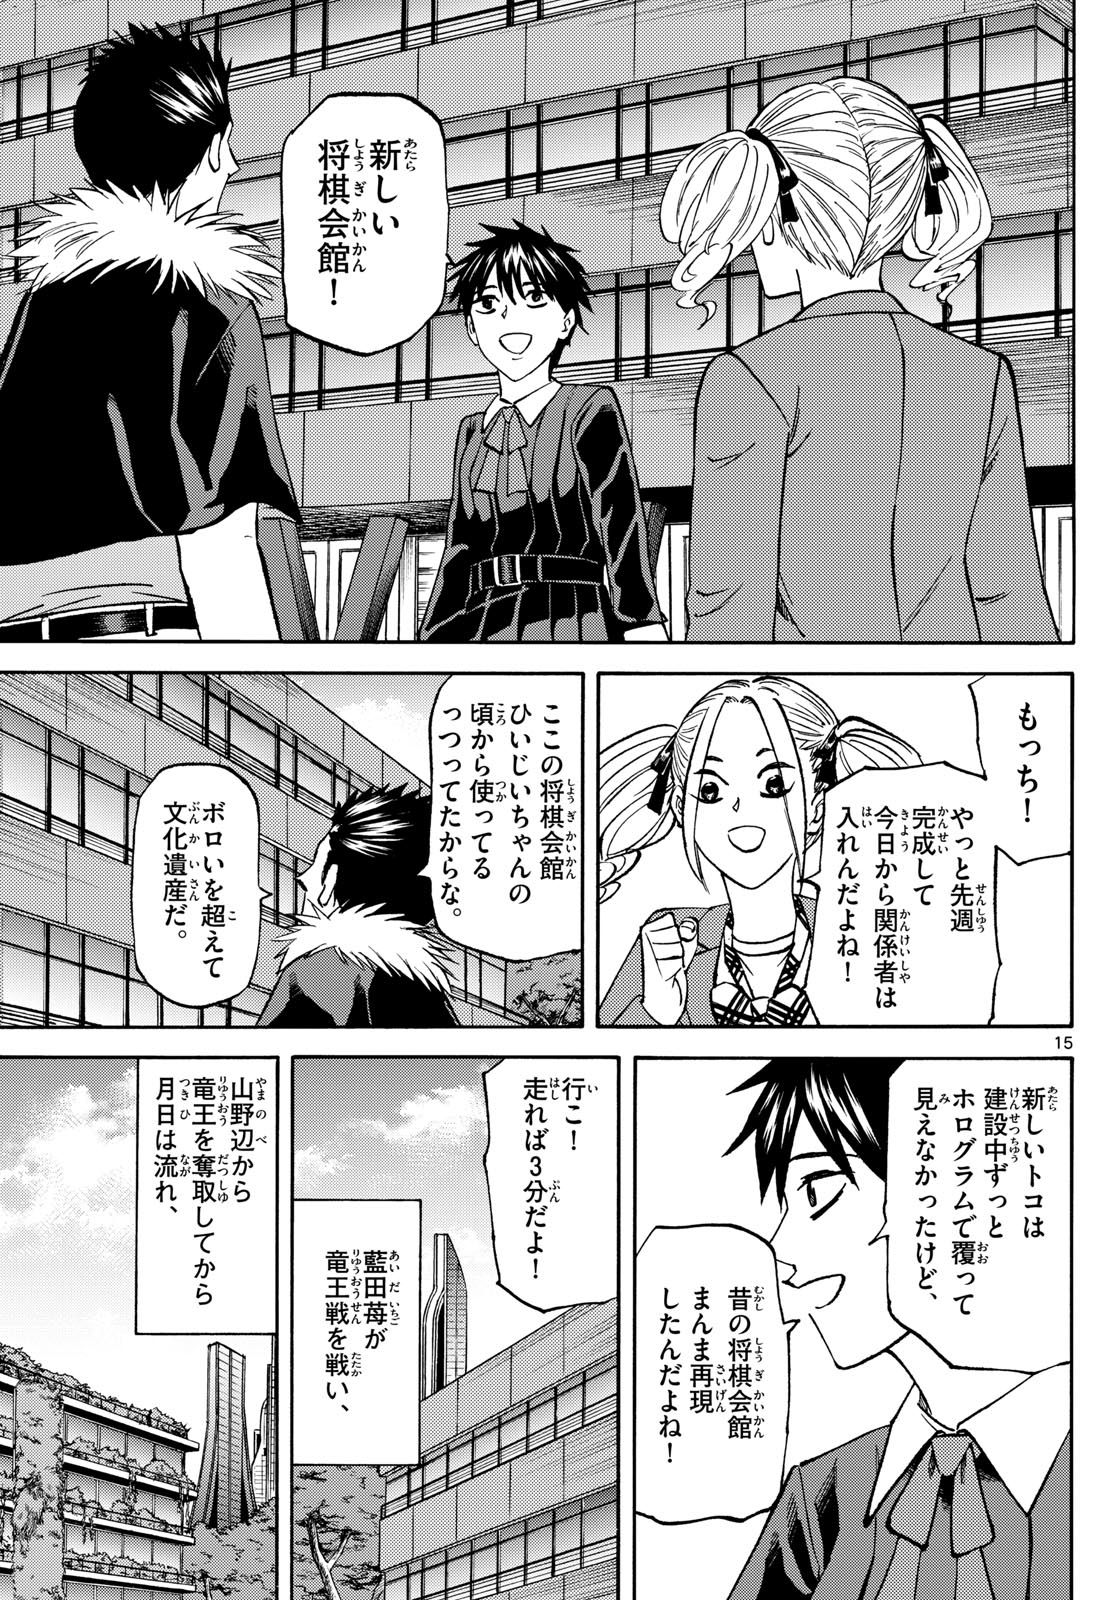 Tatsu to Ichigo - Chapter 181 - Page 15